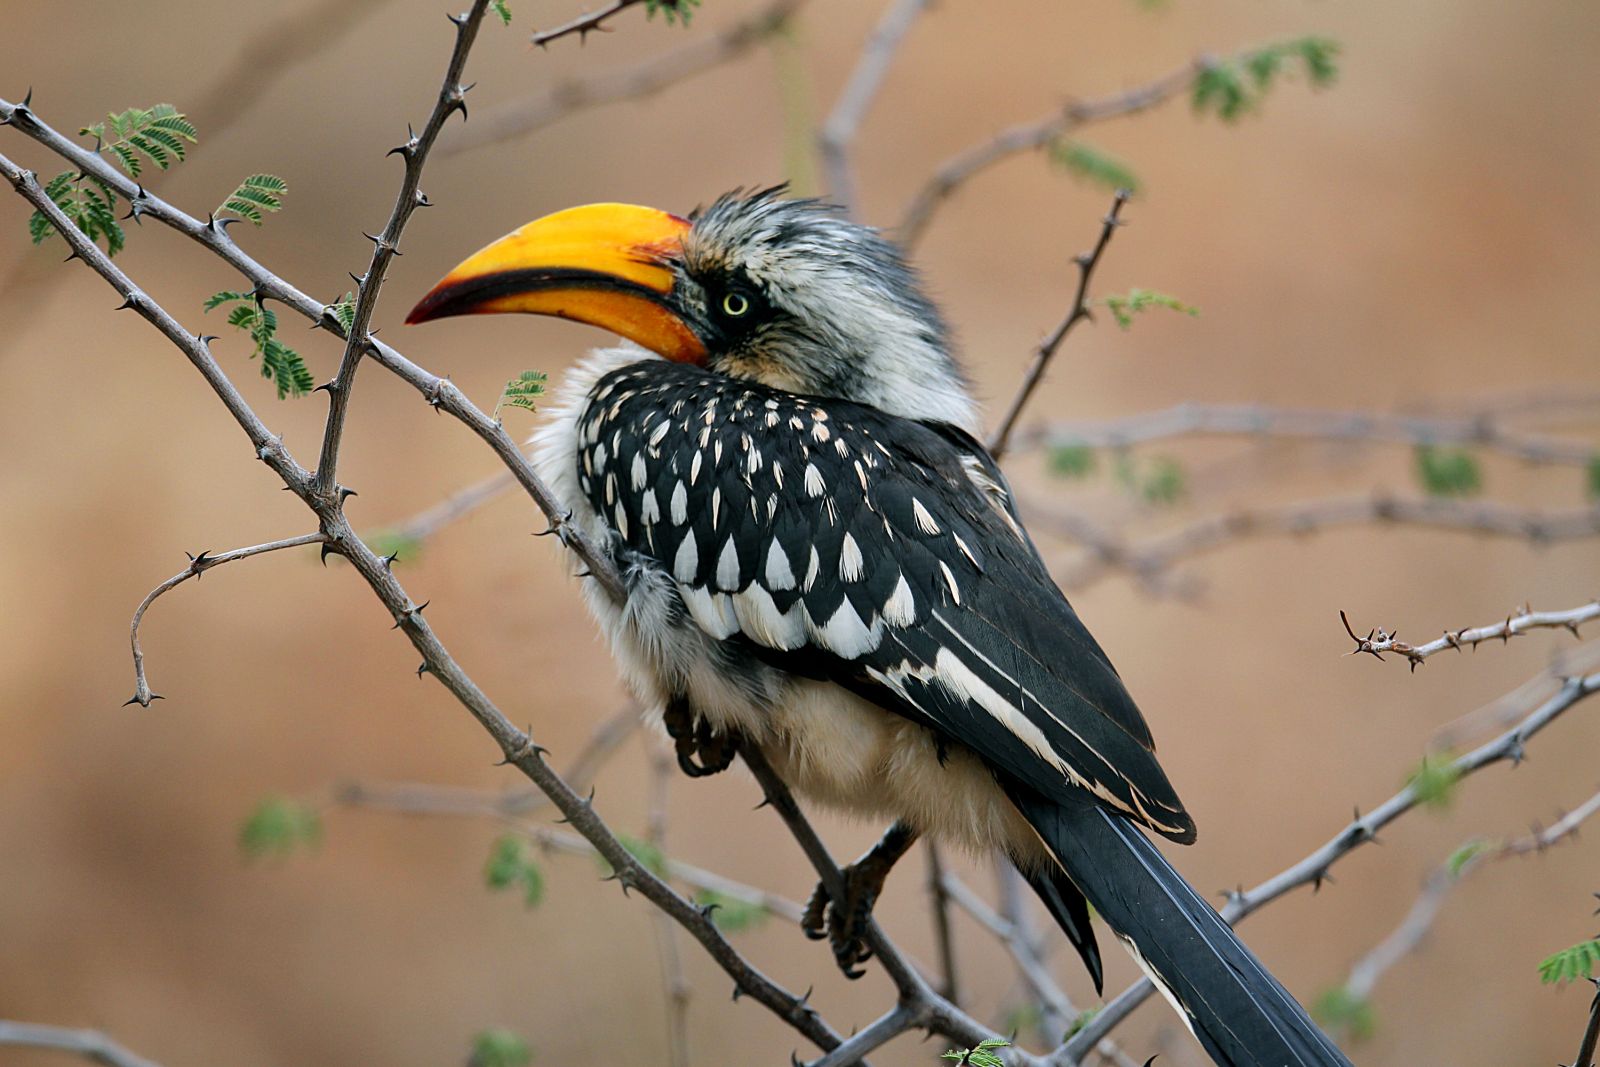 Baby eage with bright yellow beak in Kenya's Laikipia region